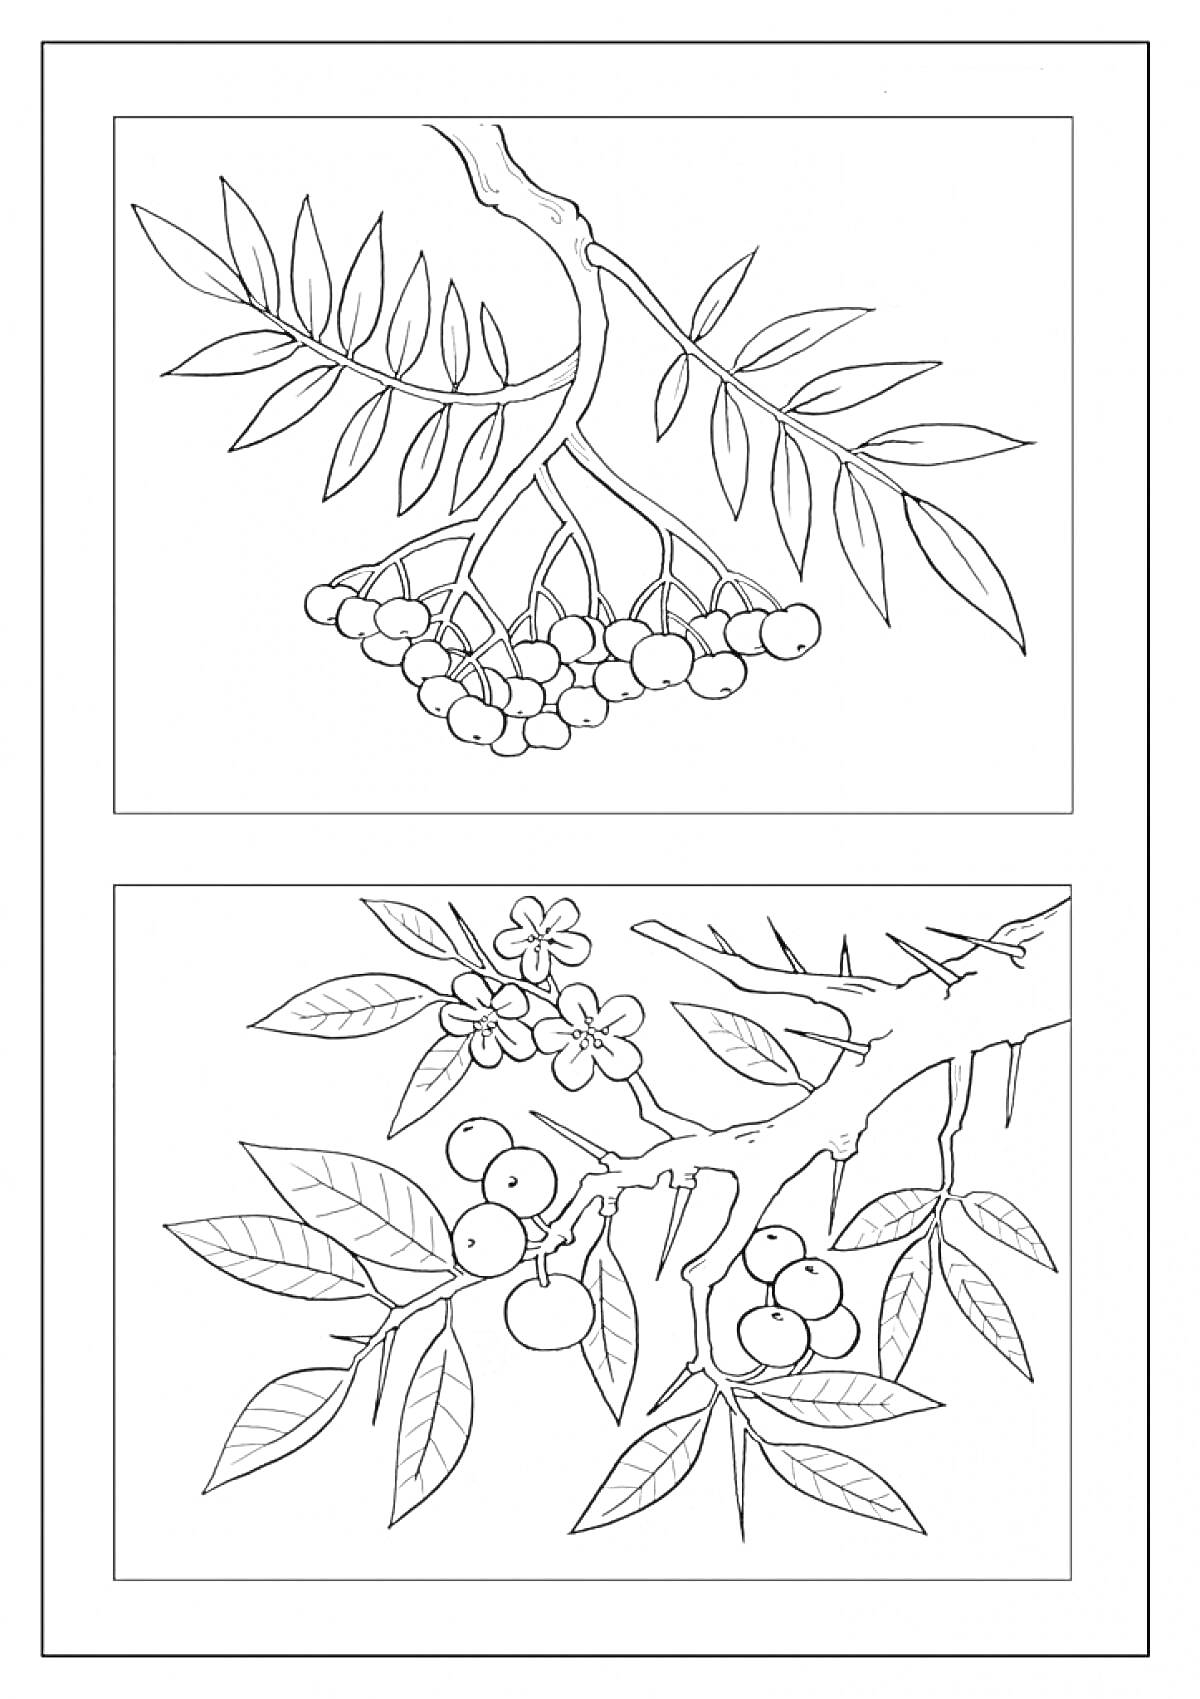 Ветка рябины с листьями и гроздьями ягод, цветущая ветка рябины с ягодами и цветами